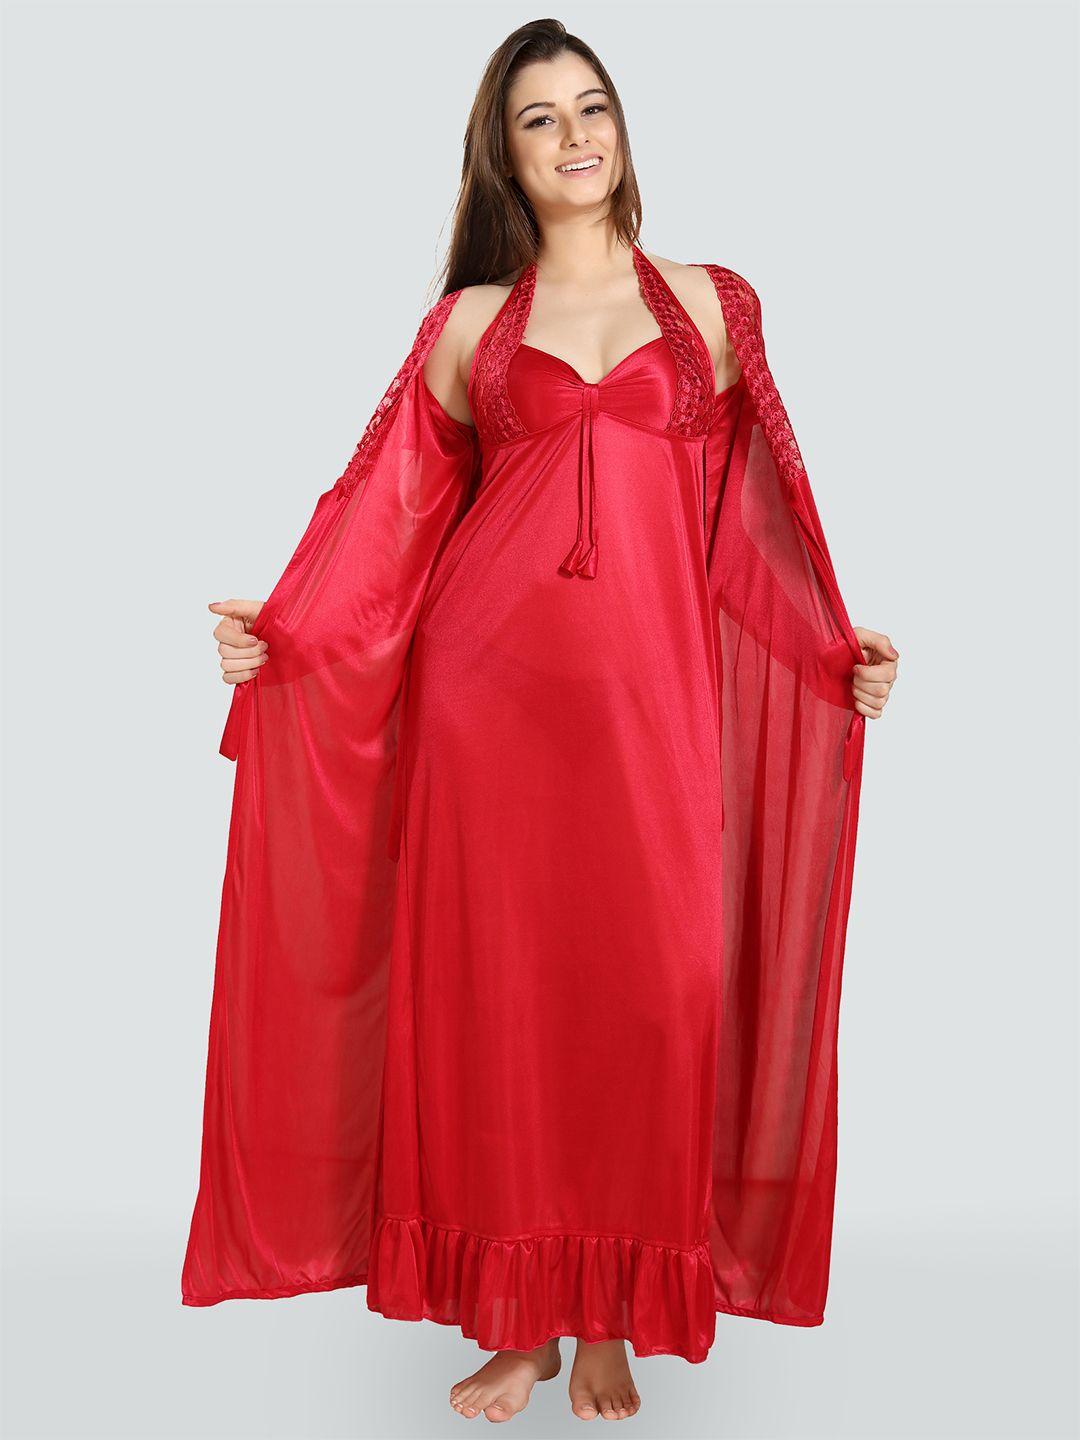 romaisa-women-red-maxi-nightdress